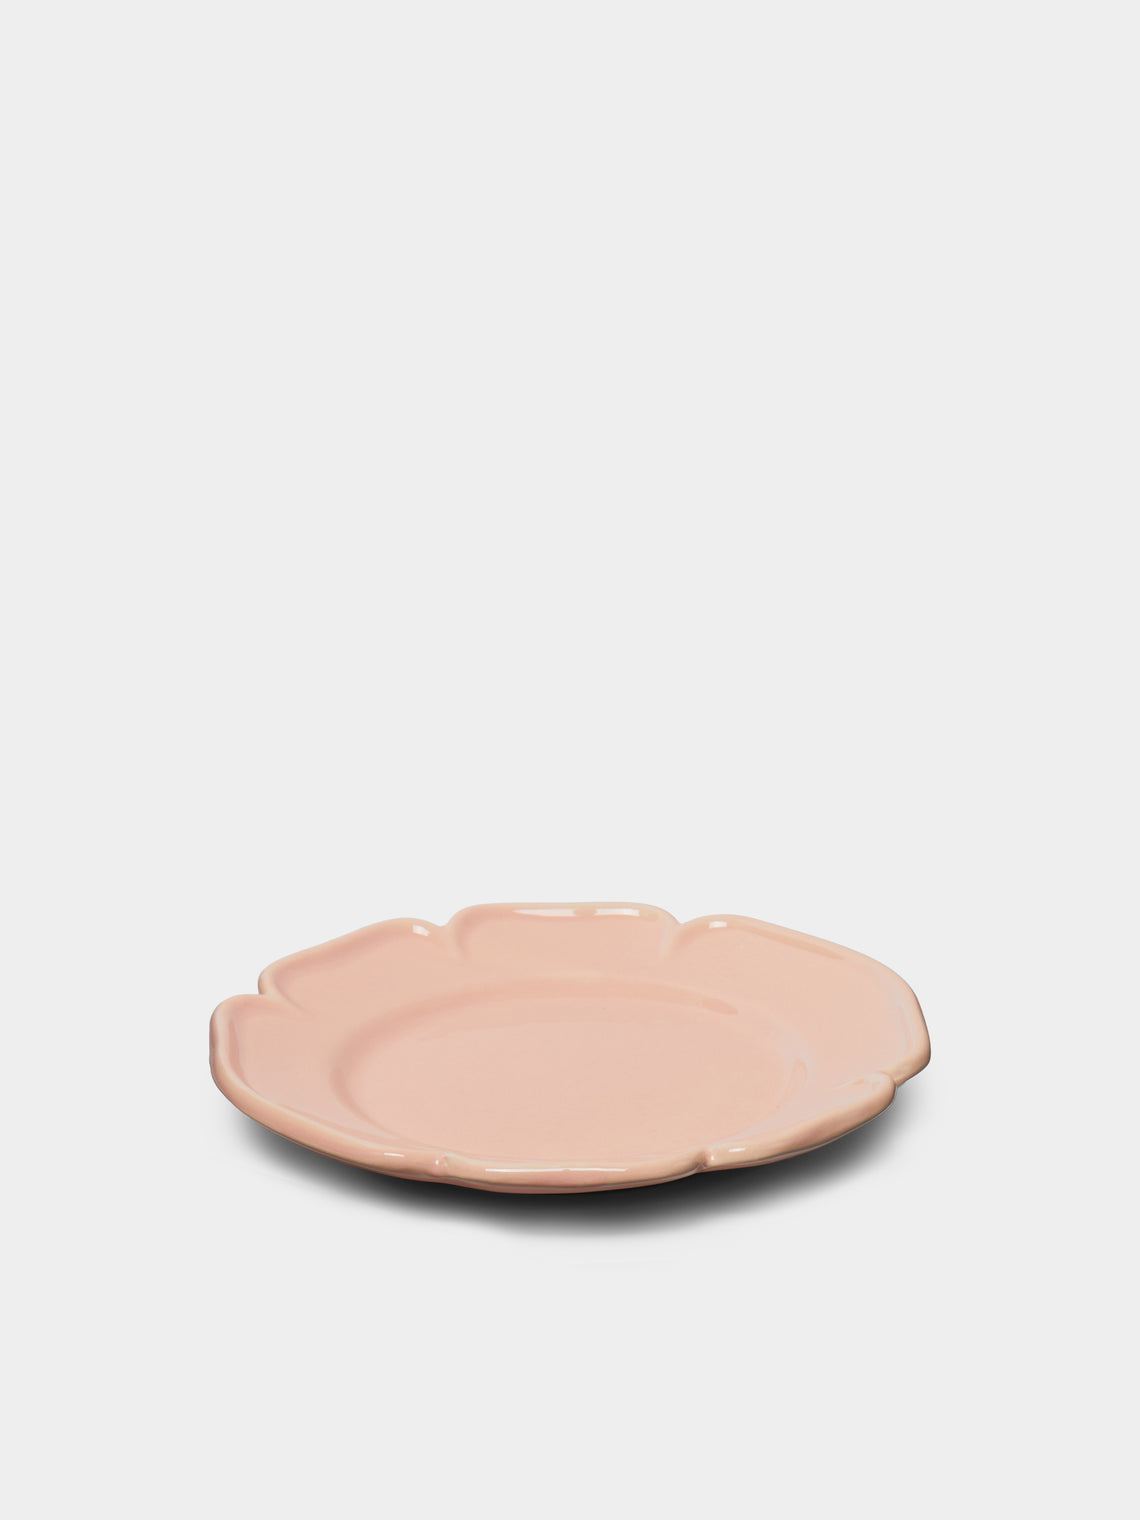 Maison Pichon Uzès - Louis XV Campagne Hand-Glazed Ceramic Side Plates (Set of 4) -  - ABASK